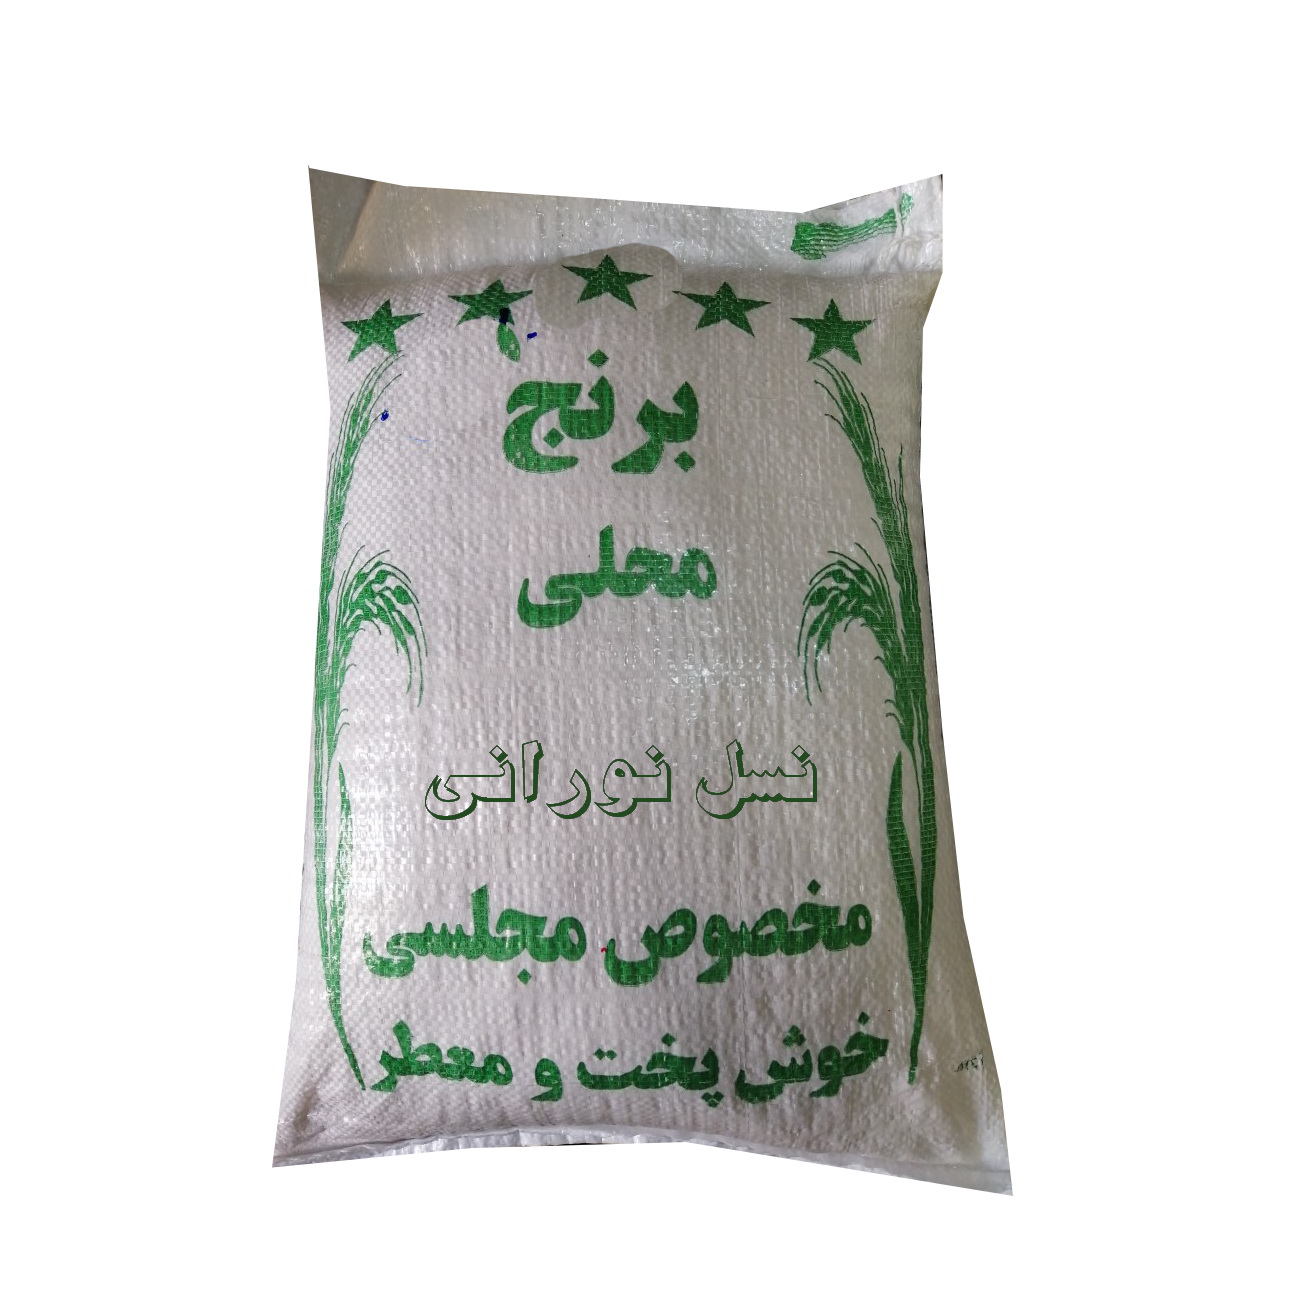 نکته خرید - قیمت روز برنج محلی خوش پخت بابل - 10 کیلوگرم خرید